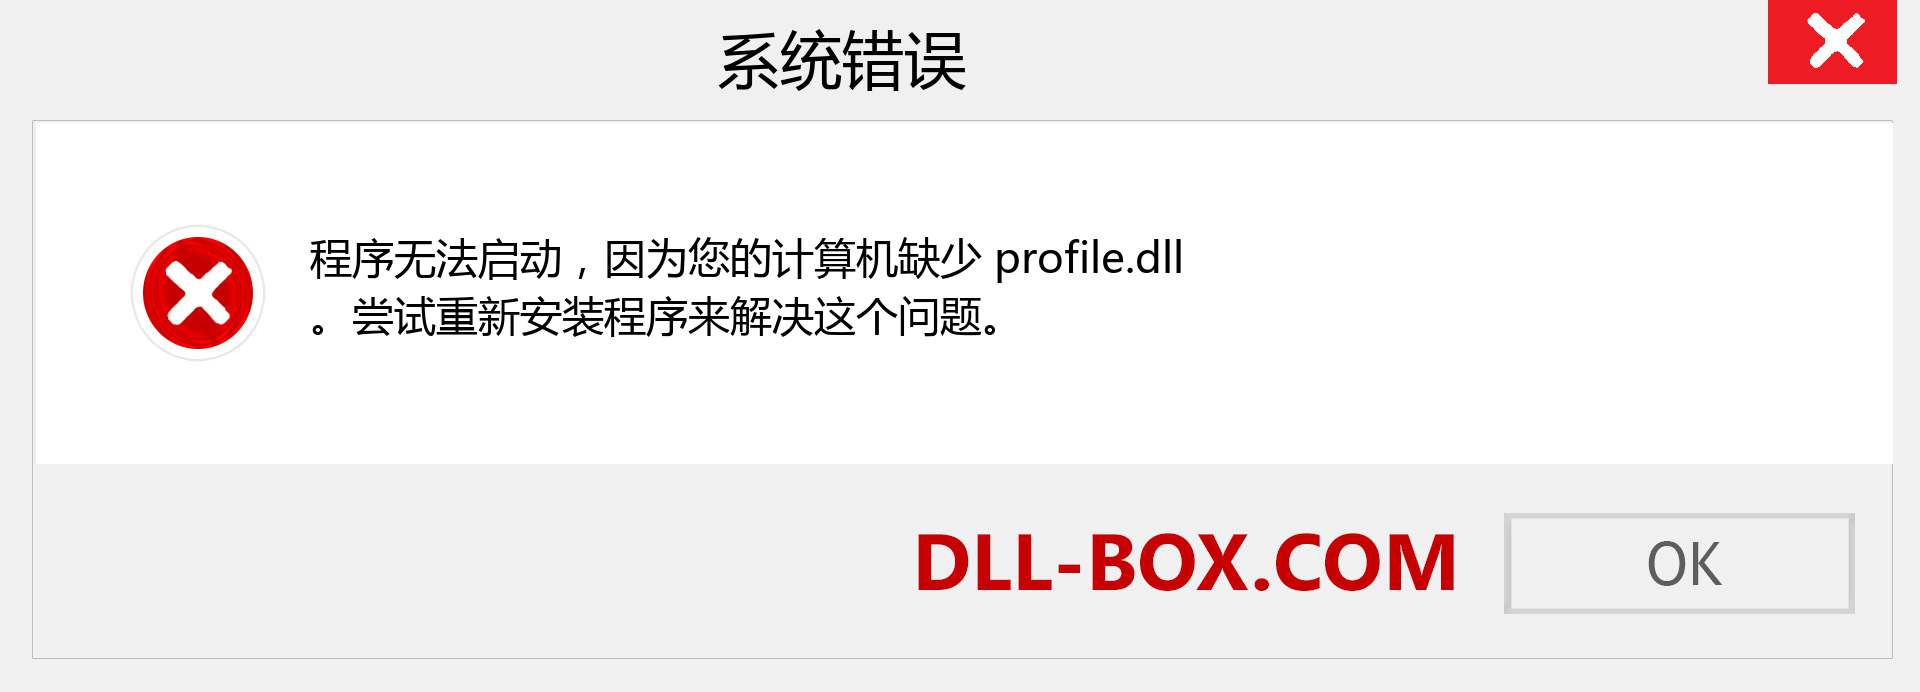 profile.dll 文件丢失？。 适用于 Windows 7、8、10 的下载 - 修复 Windows、照片、图像上的 profile dll 丢失错误